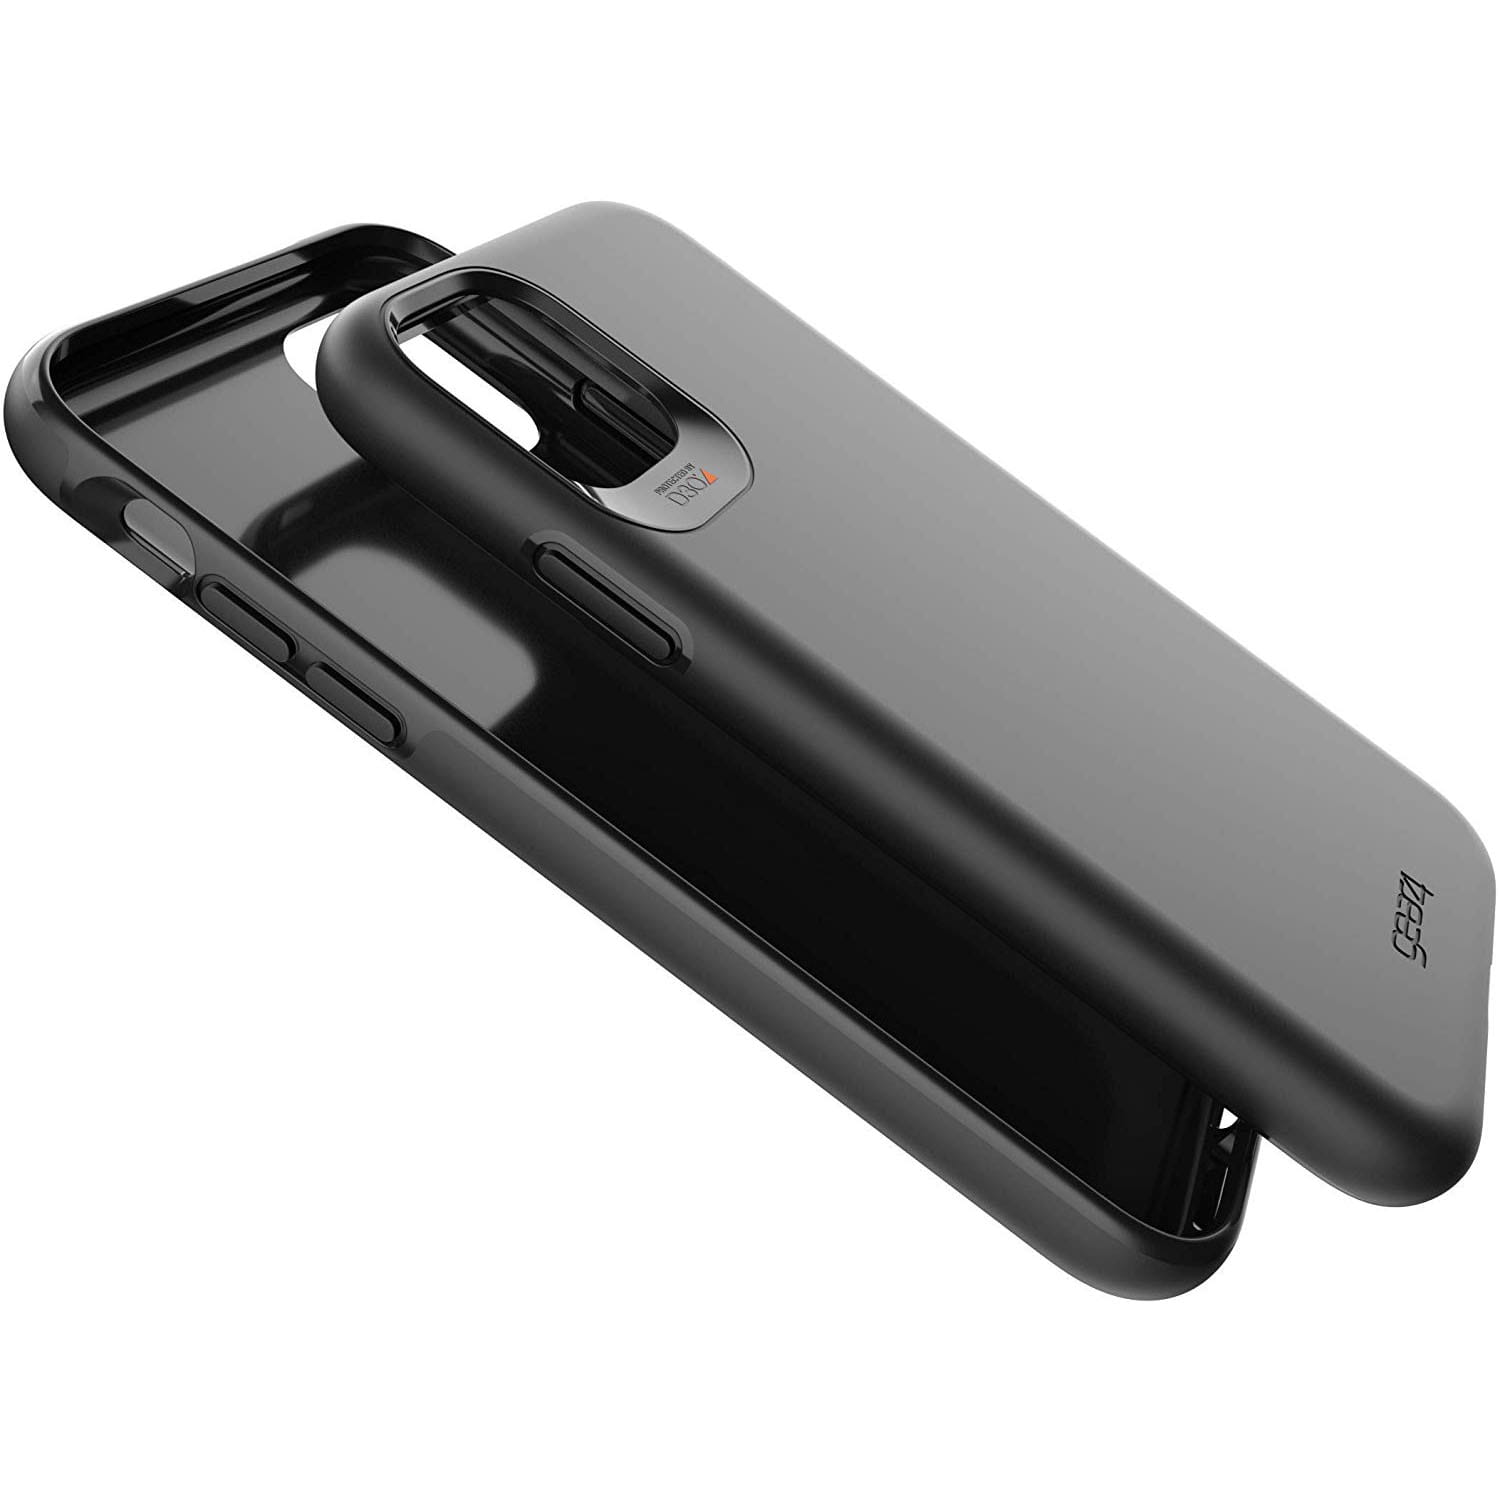 Schutzhülle Gear4 aus der Serie Holborn für iPhone 11 Pro, schwarz.